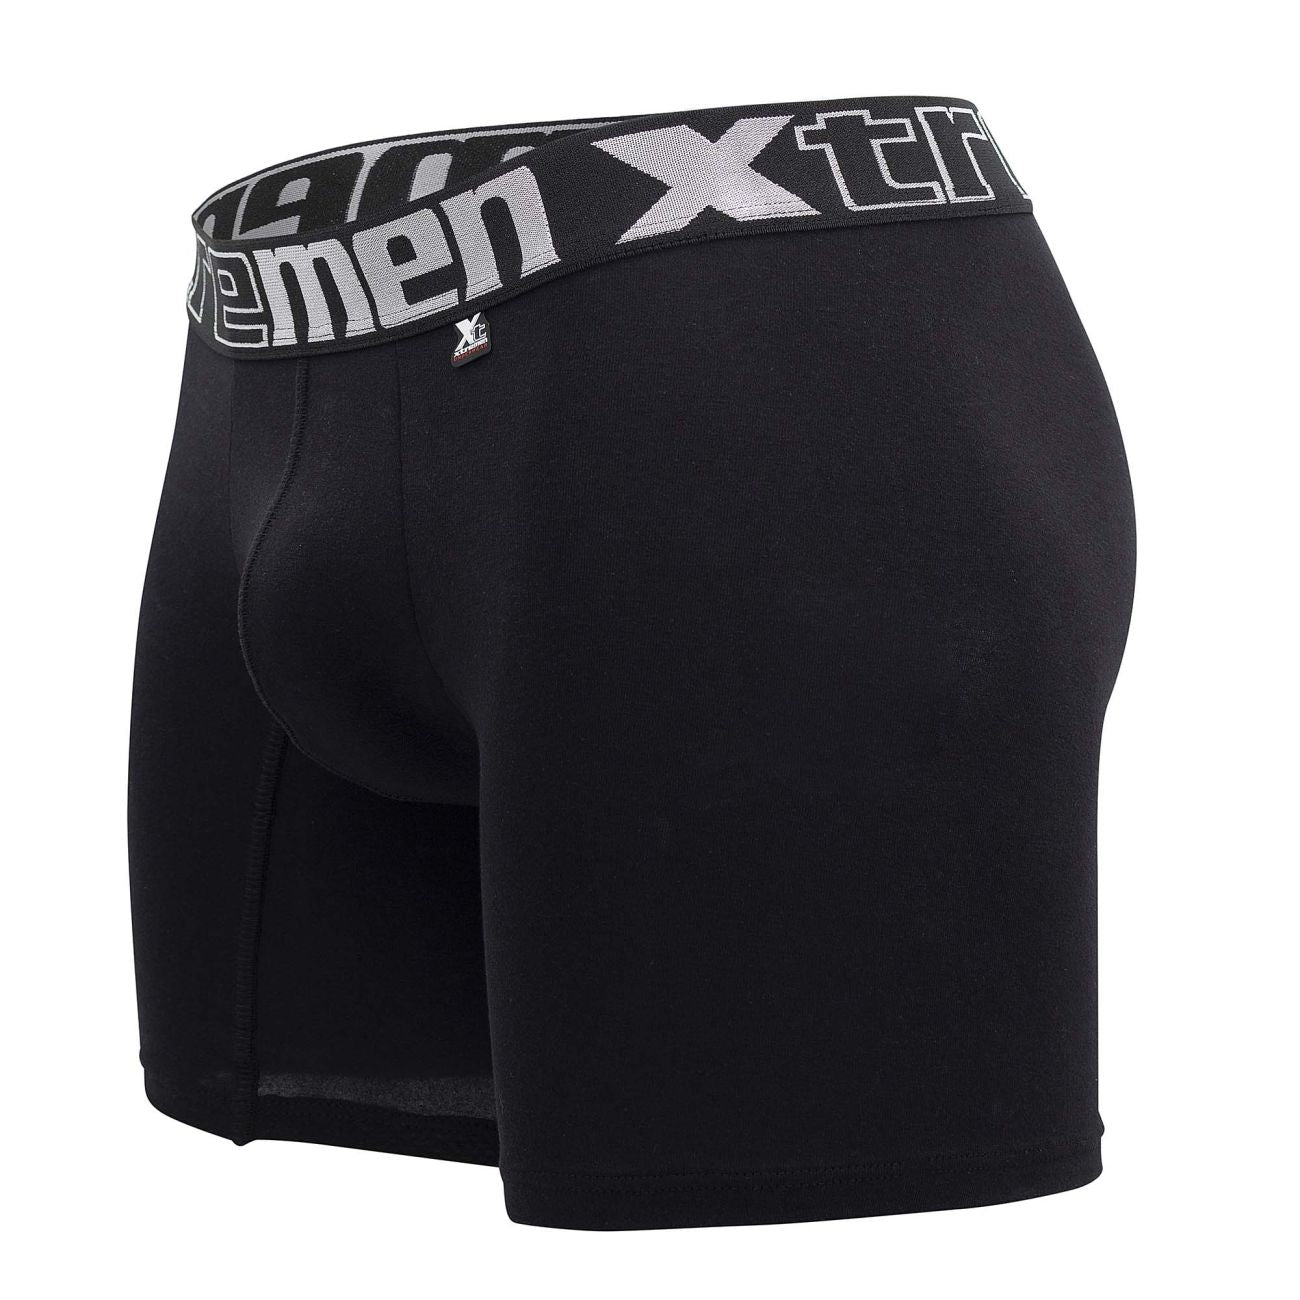 Xtremen 70001 Essential Boxer